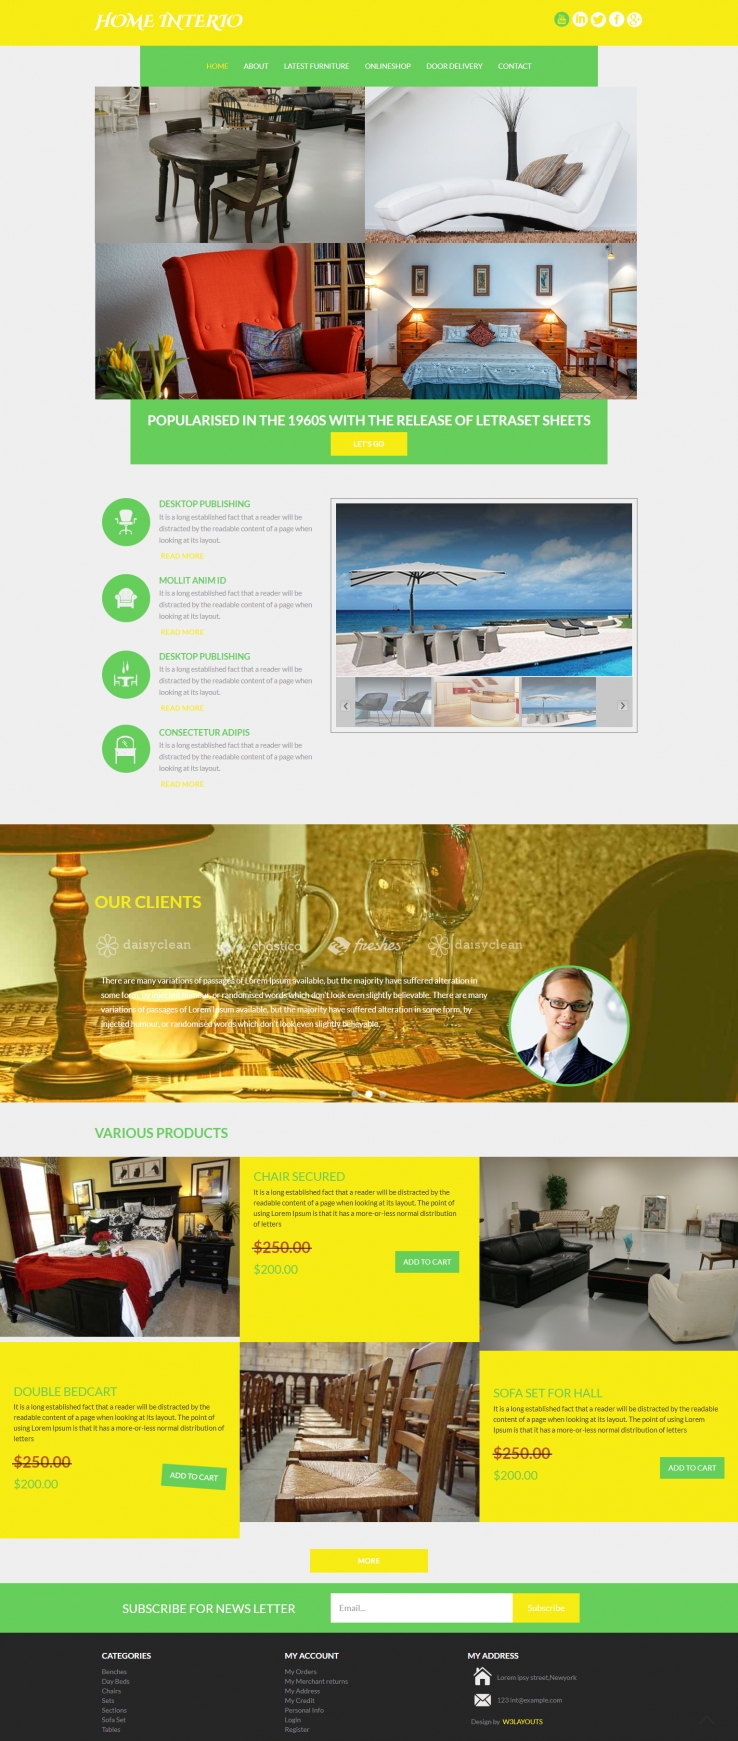 绿色简洁风格的创意家居设计整站网站源码下载